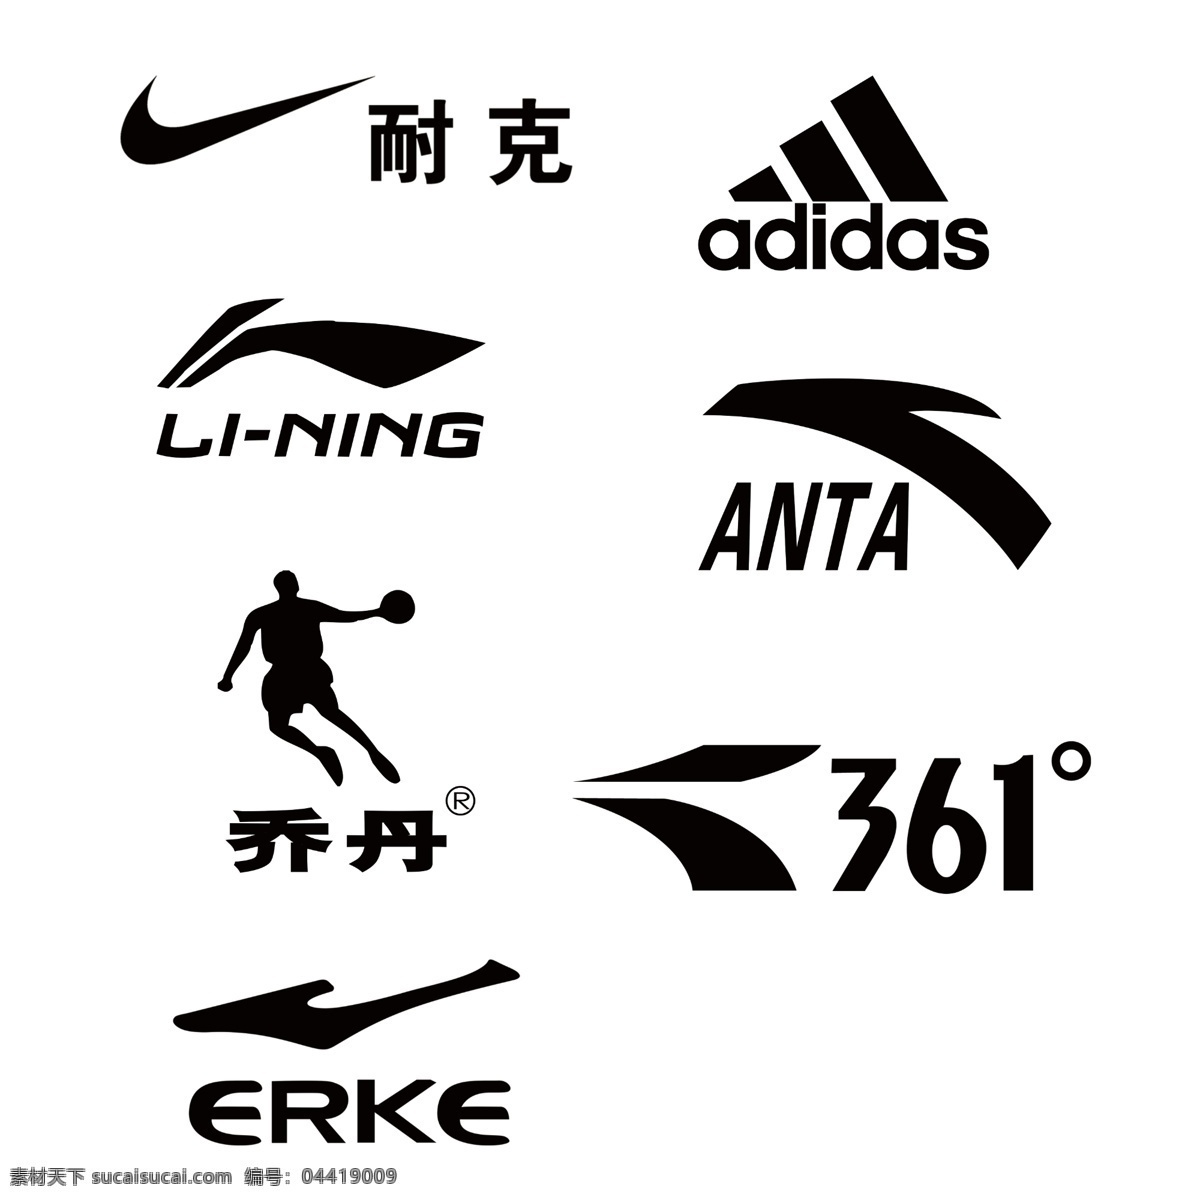 运动品牌标志 ps分层图 设计素材 广告素材 300分辨率 标志图标 公共标识标志